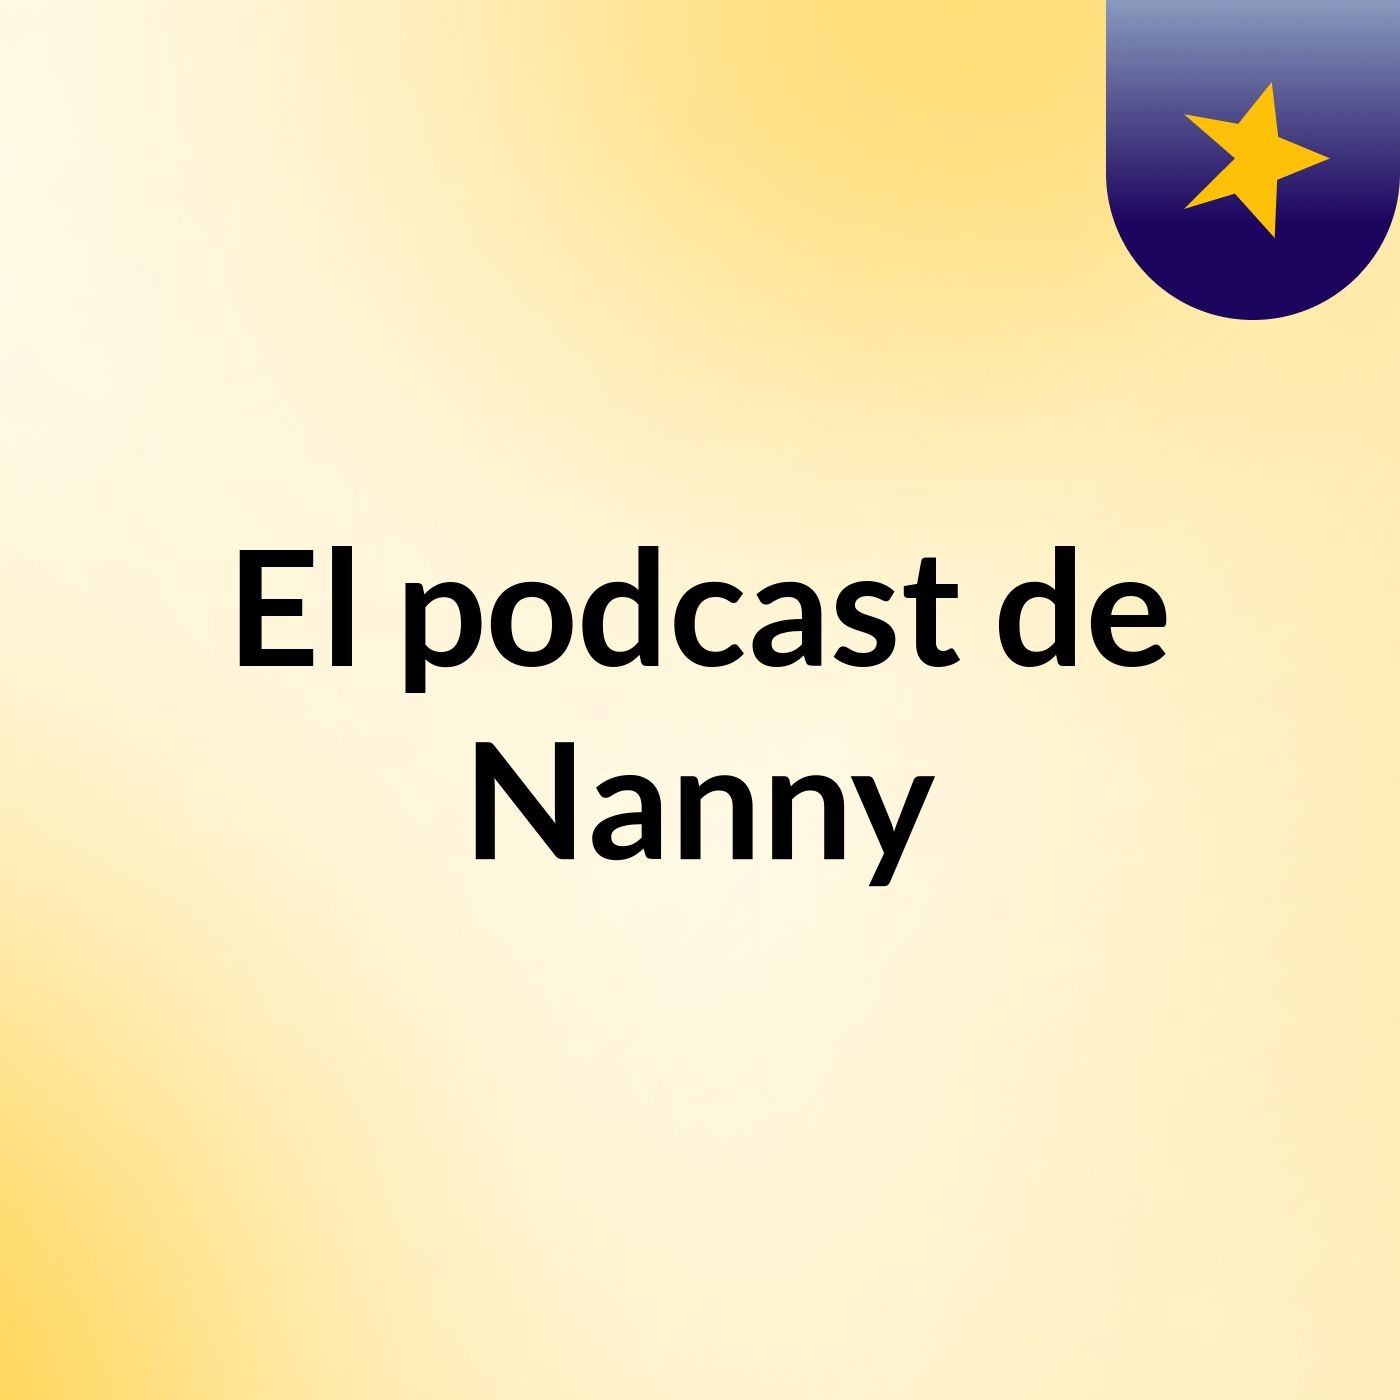 El podcast de Nanny